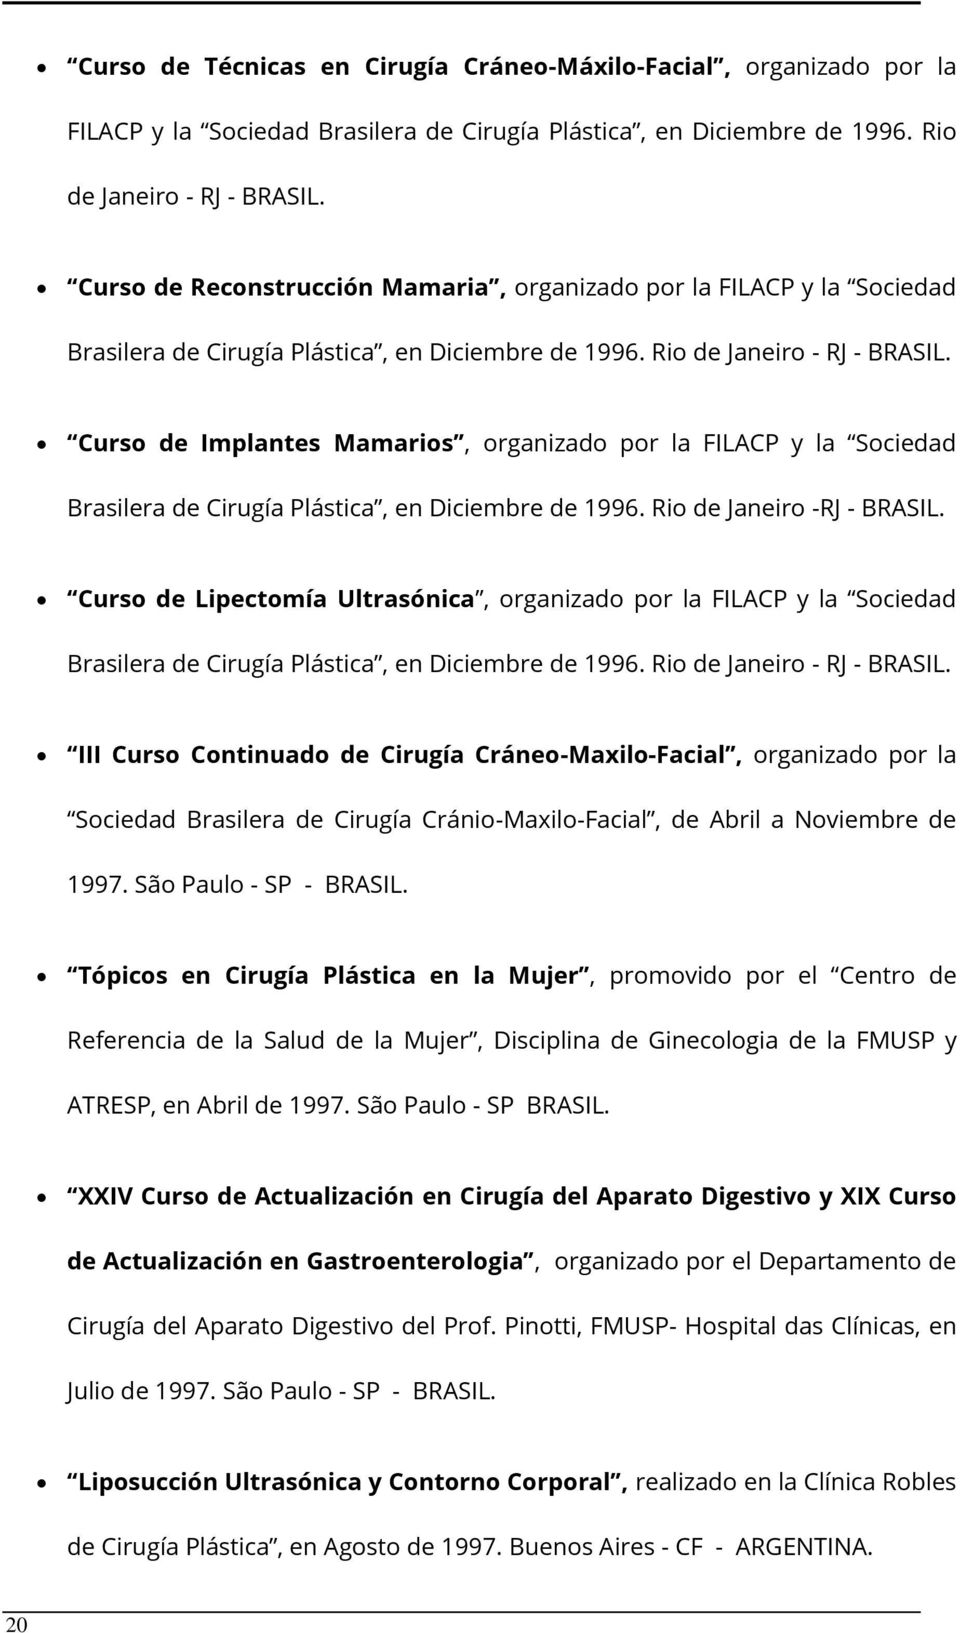 Curso de Implantes Mamarios, organizado por la FILACP y la Sociedad Brasilera de Cirugía Plástica, en Diciembre de 1996. Rio de Janeiro -RJ - BRASIL.